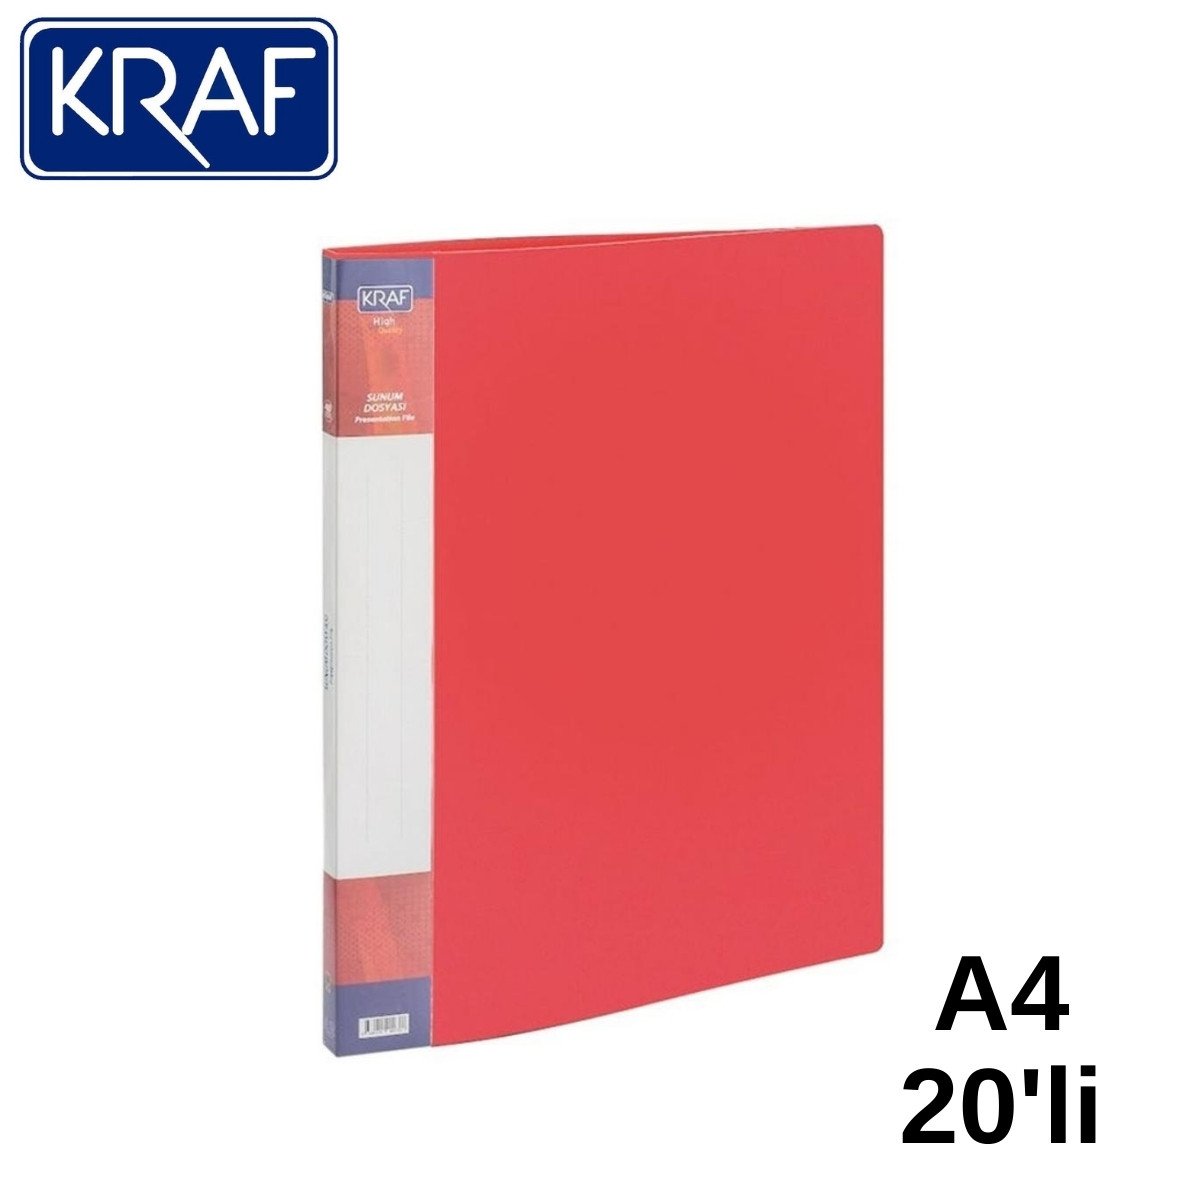 Kraf Sunum Dosyası A4 20li Kırmızı